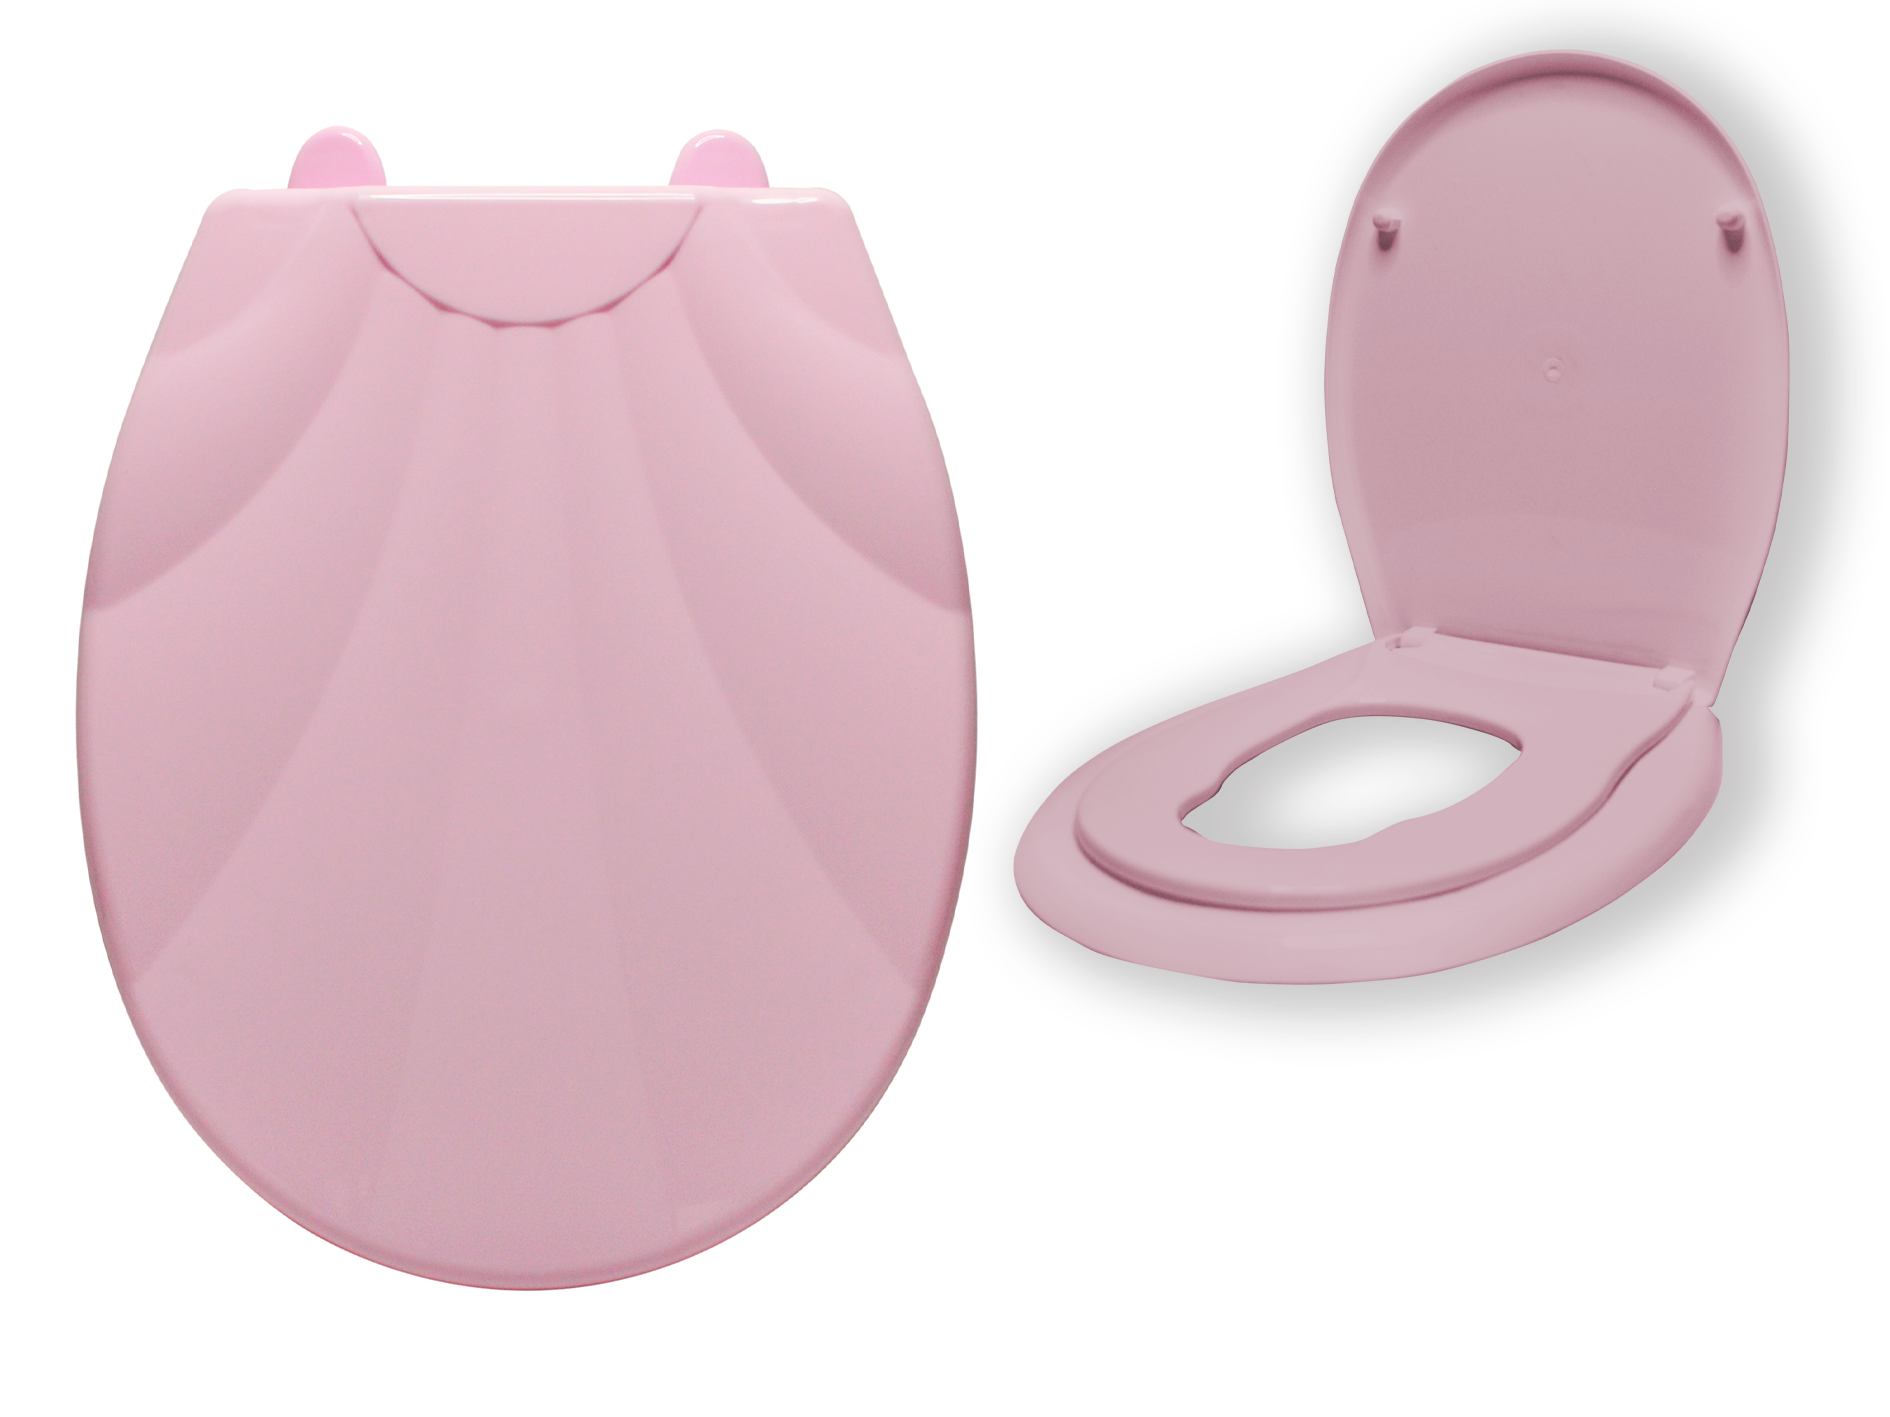 Сиденье для унитаза ATLANFA с детским вкладышем LUX Ракушка, розовый вкладыш пвх для документов 1 комплект прозрачный